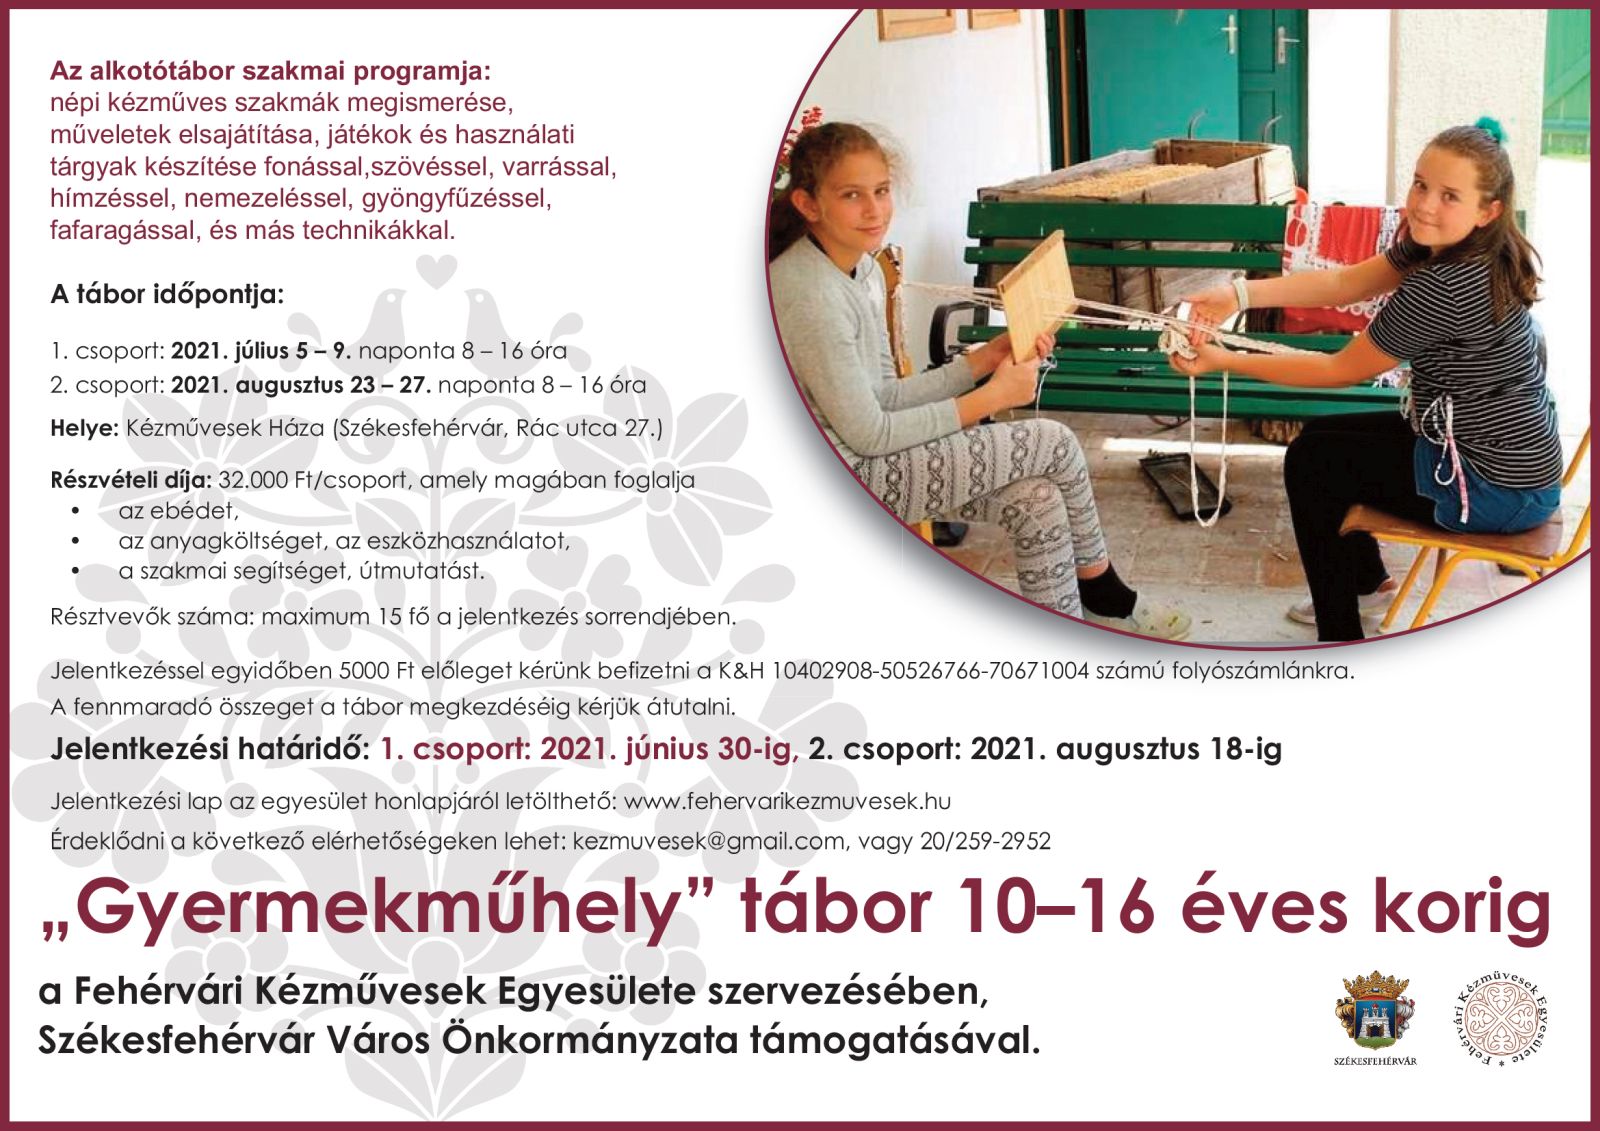 Idén nyáron is megszervezi két turnusban a gyermektáborát a Fehérvári Kézművesek Egyesülete